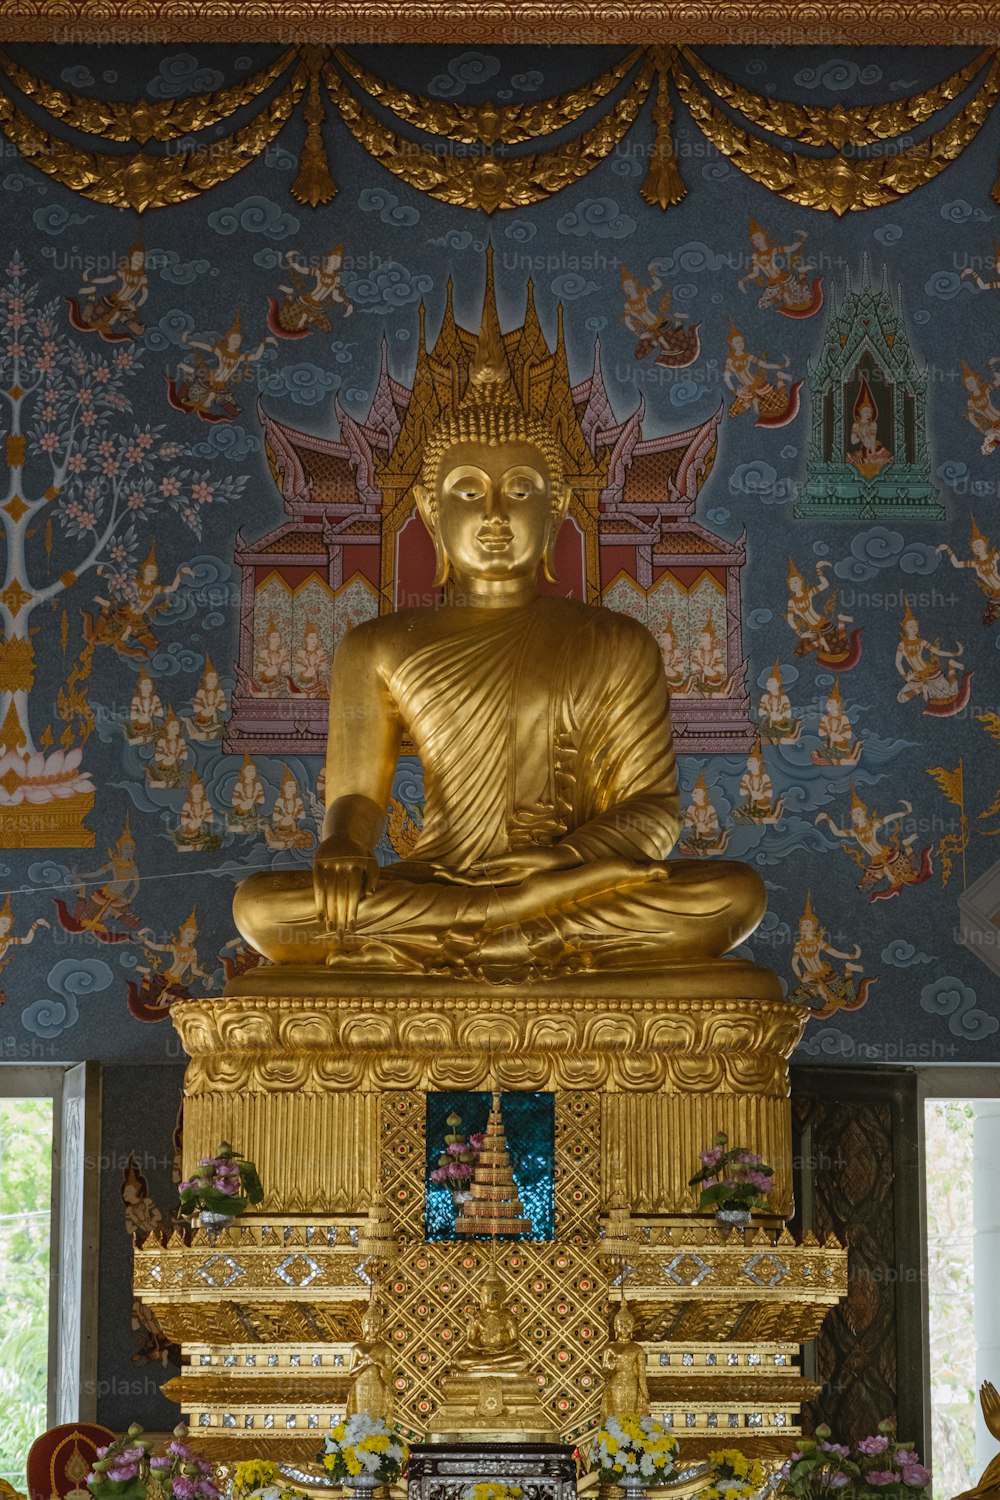 Eine goldene Buddha-Statue sitzt auf einem Tisch